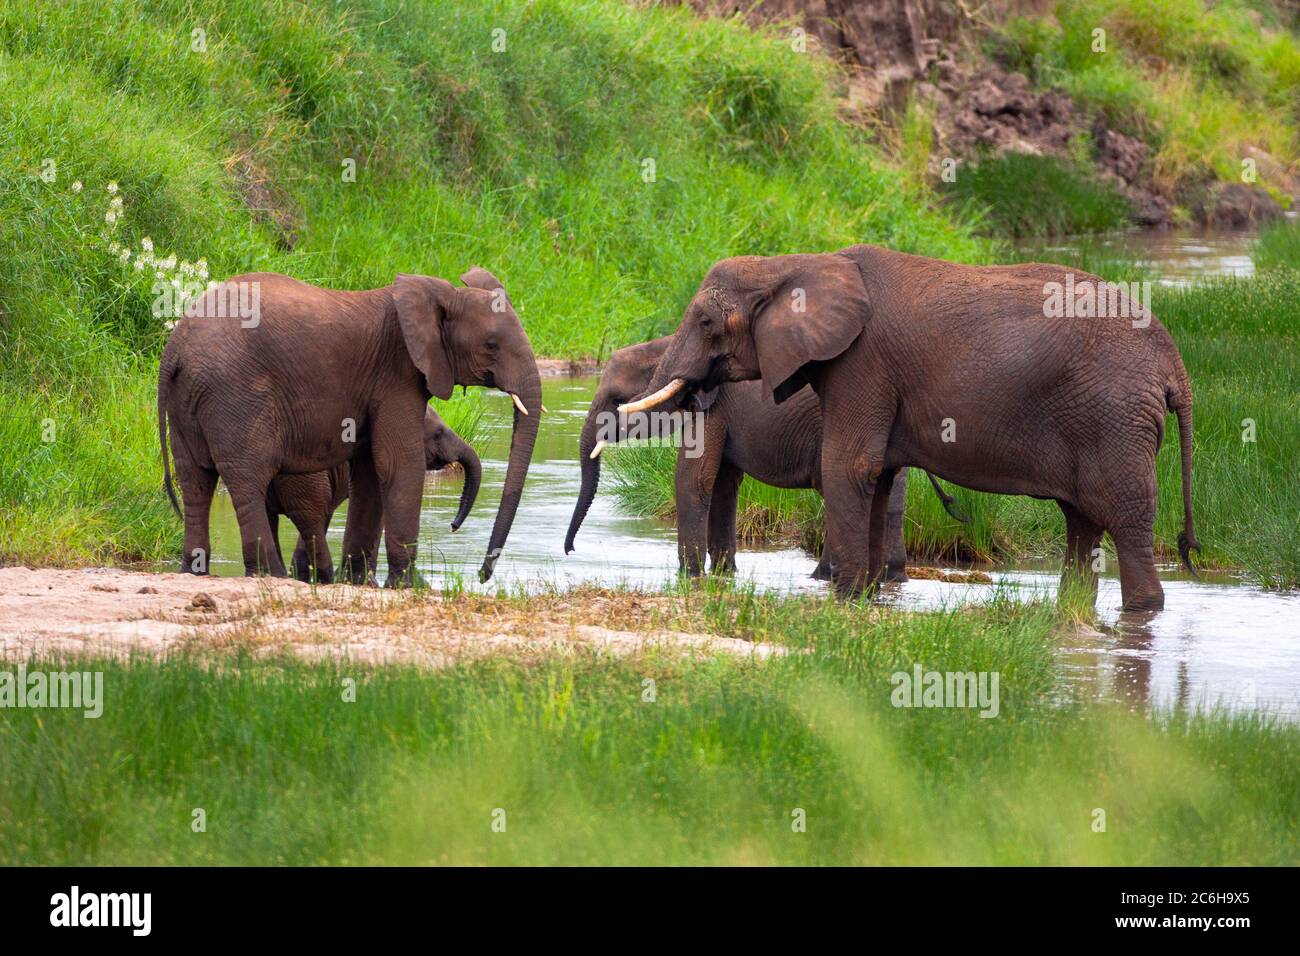 Un troupeau d'éléphants de Bush d'Afrique (Loxodonta africana) photographié dans la nature Banque D'Images